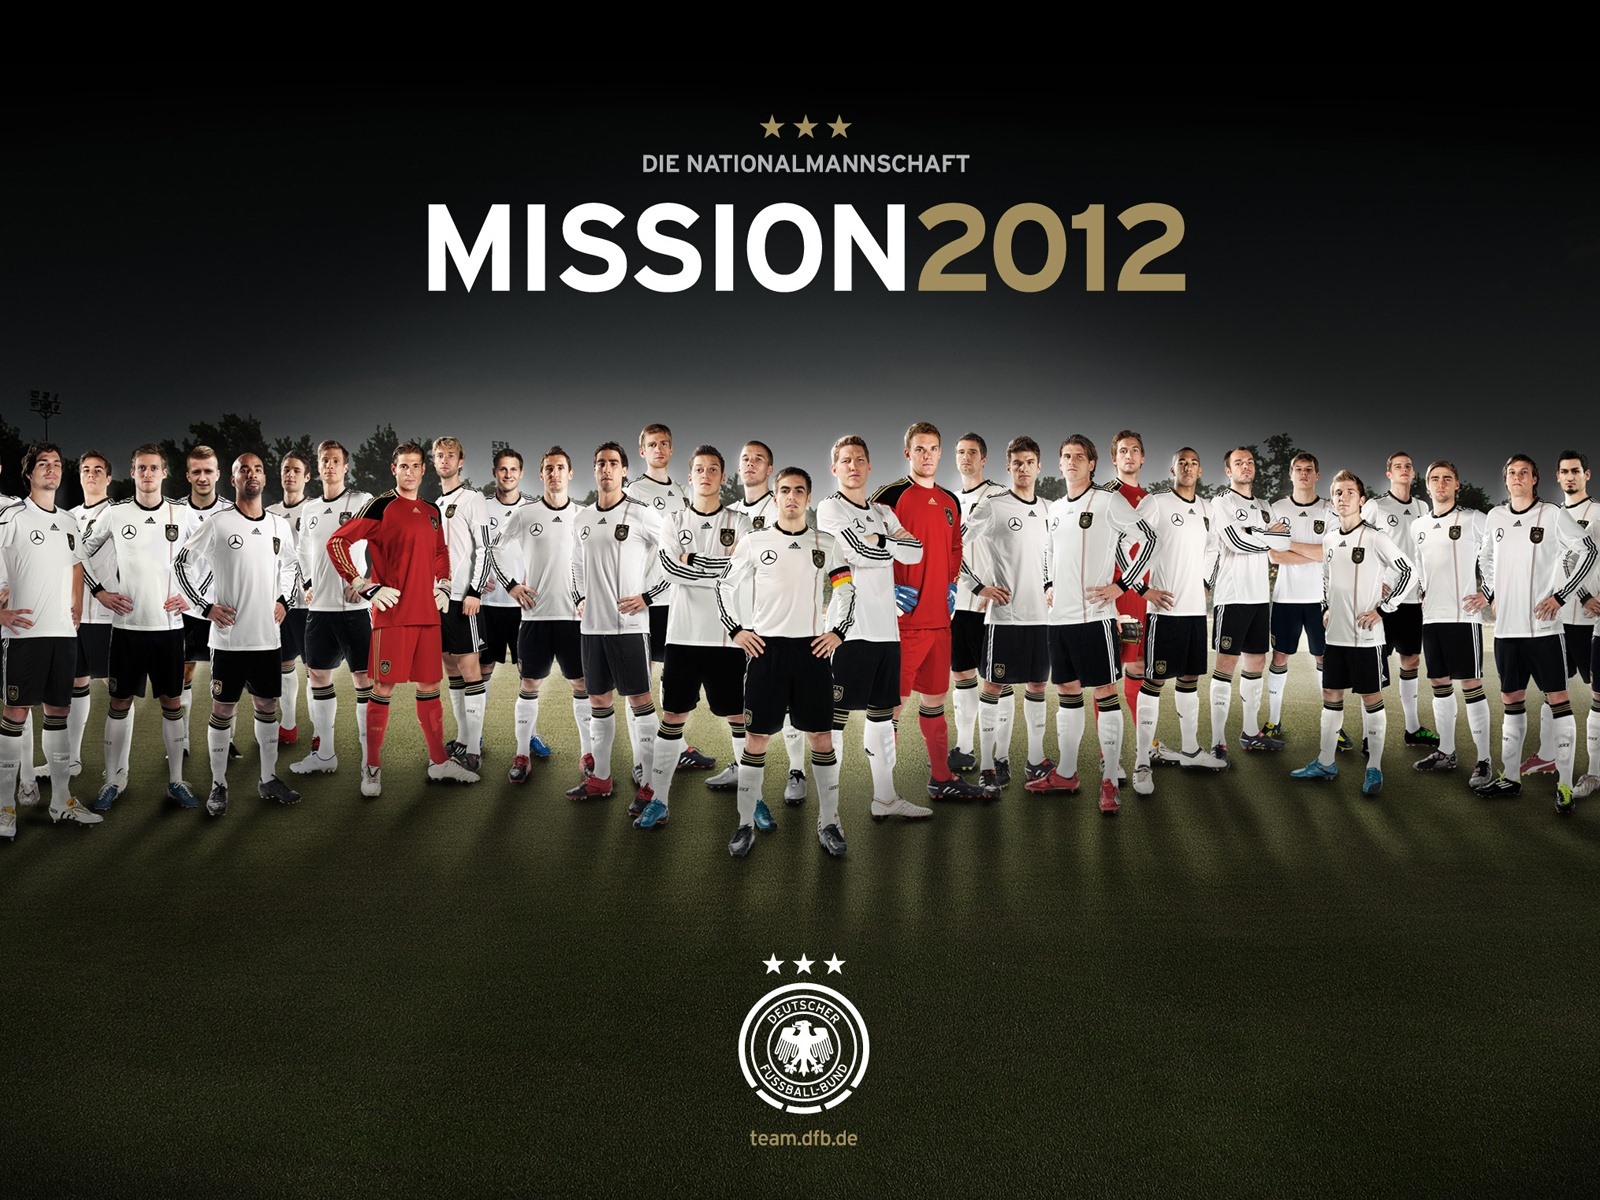 UEFA EURO 2012 欧洲足球锦标赛 高清壁纸(二)5 - 1600x1200